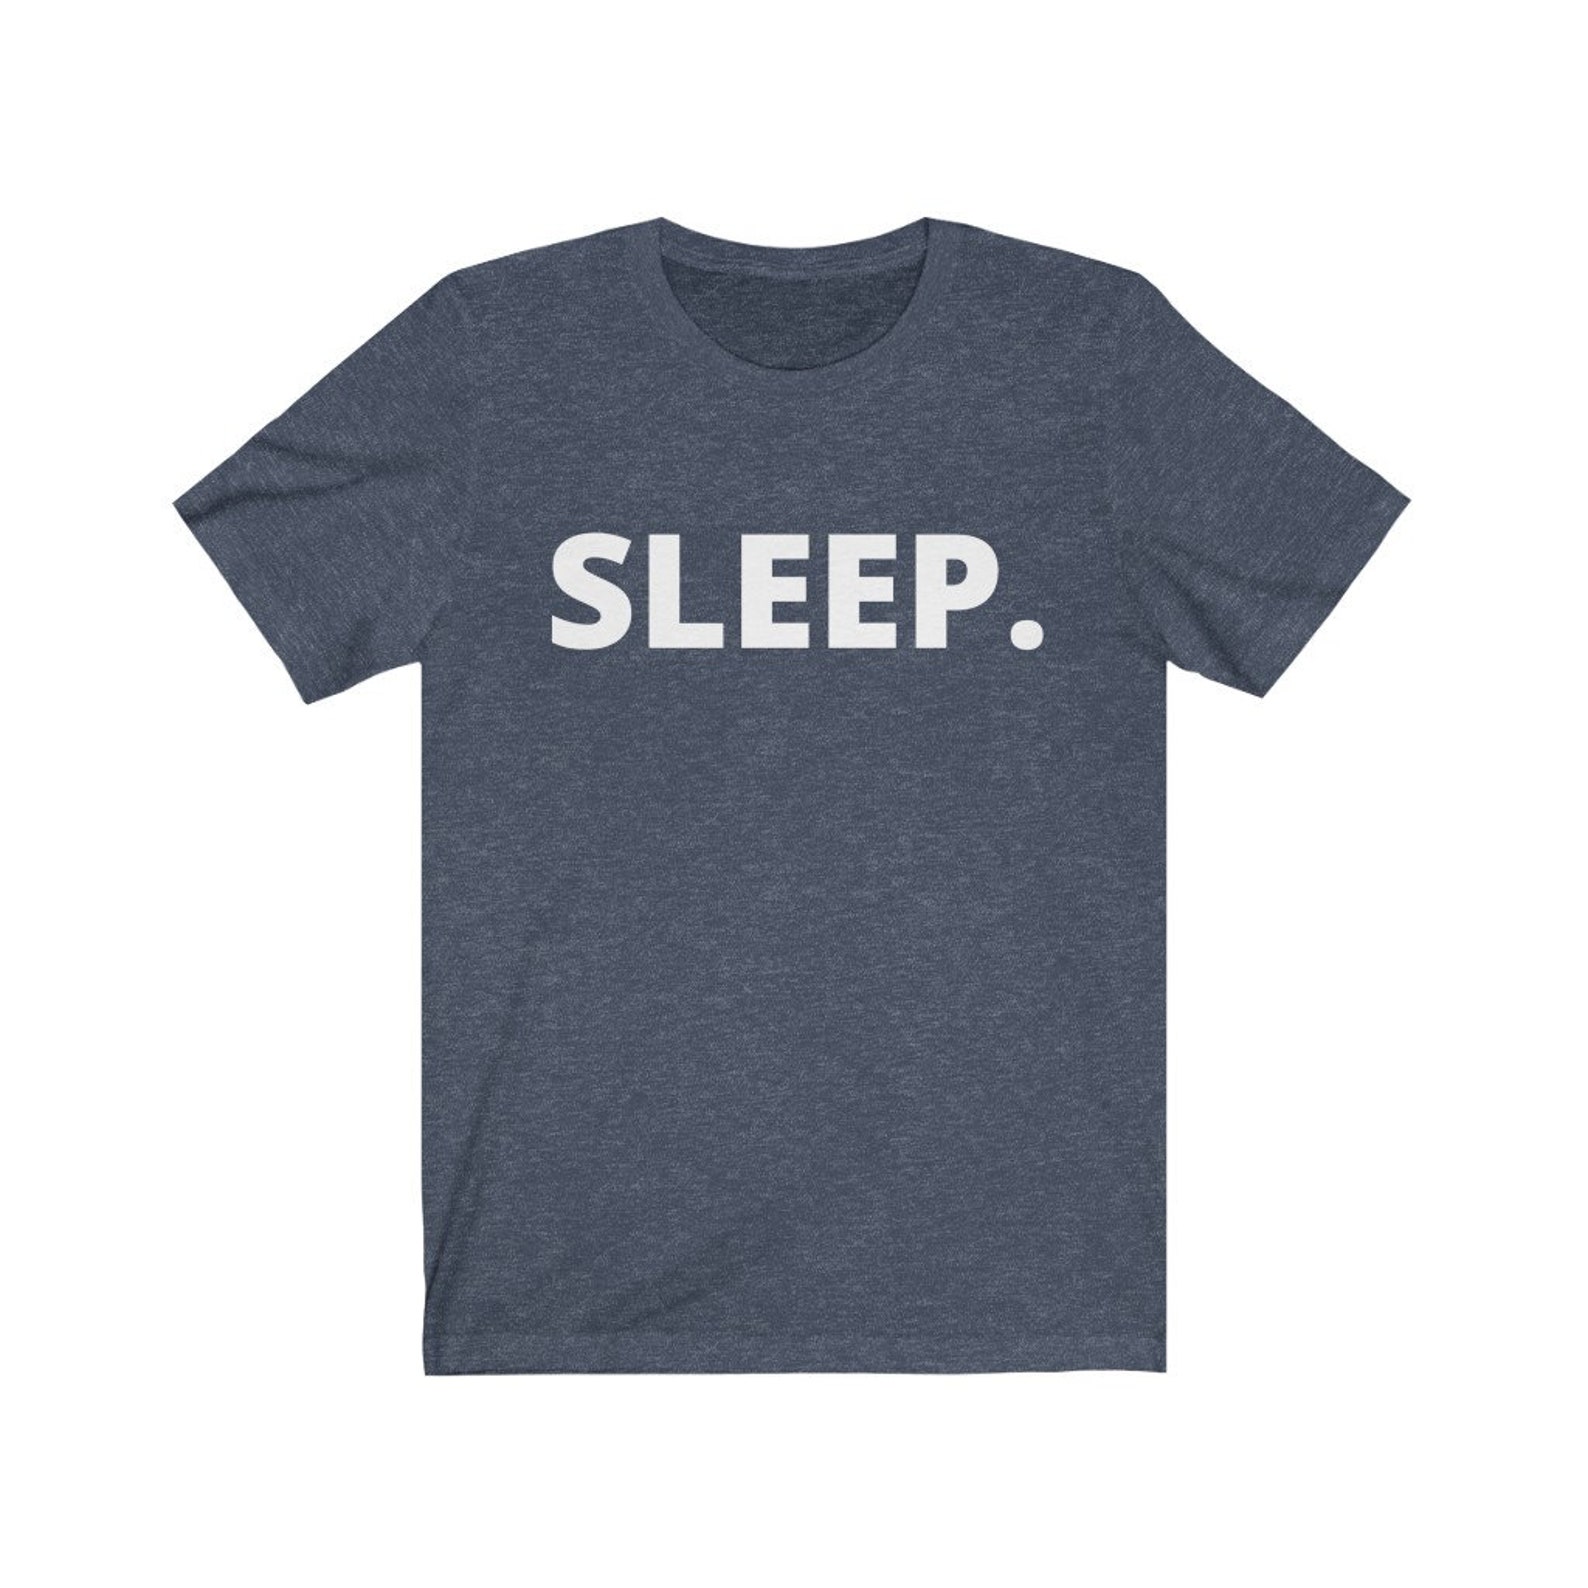 Funny Sleep T-Shirt I Love Sleep Need Sleep Shirt Unisex | Etsy